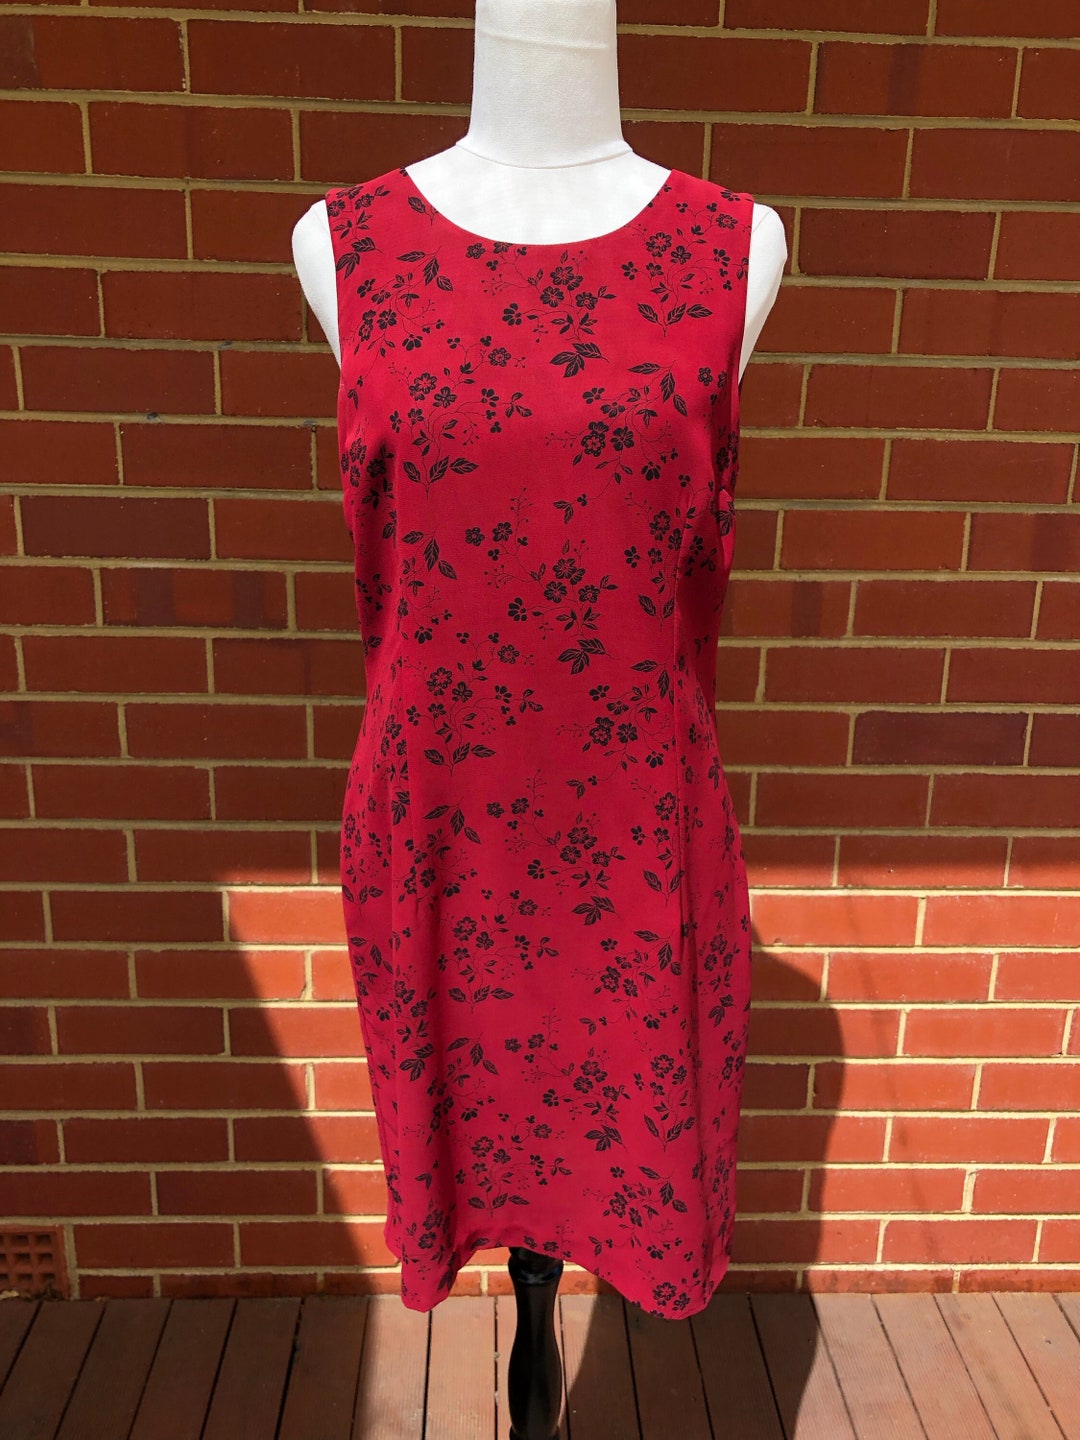 SPORTSGIRL Australian Vintage Floral Red Dress - Etsy Australia